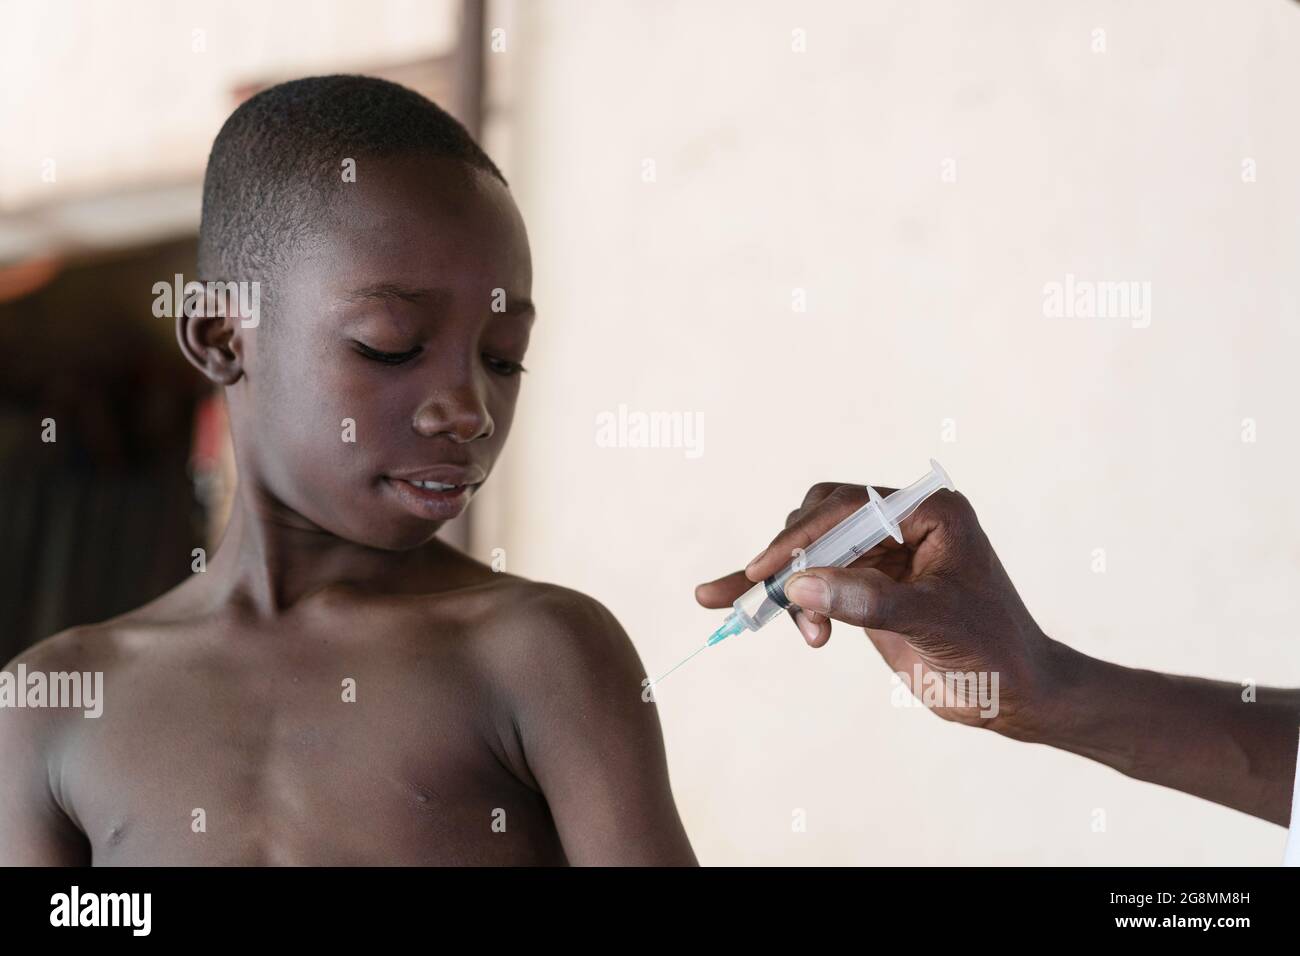 Questa è un'immagine di un giovane e adorabile bambino africano nero che sorride i momenti prima di ottenere il suo primo vaccino. Foto Stock